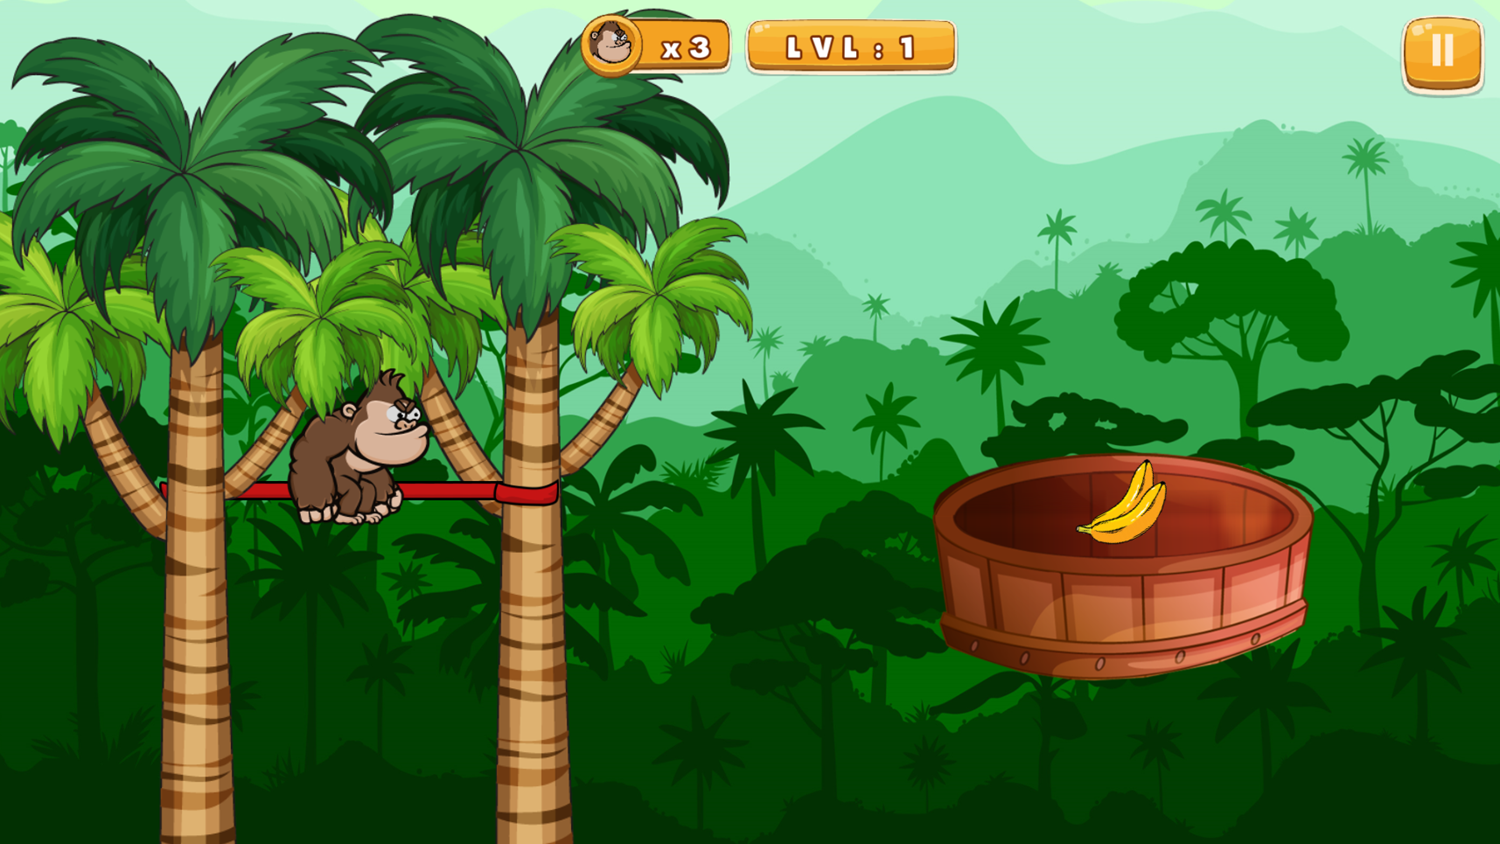 Monkey King Game Level Start Screenshot.